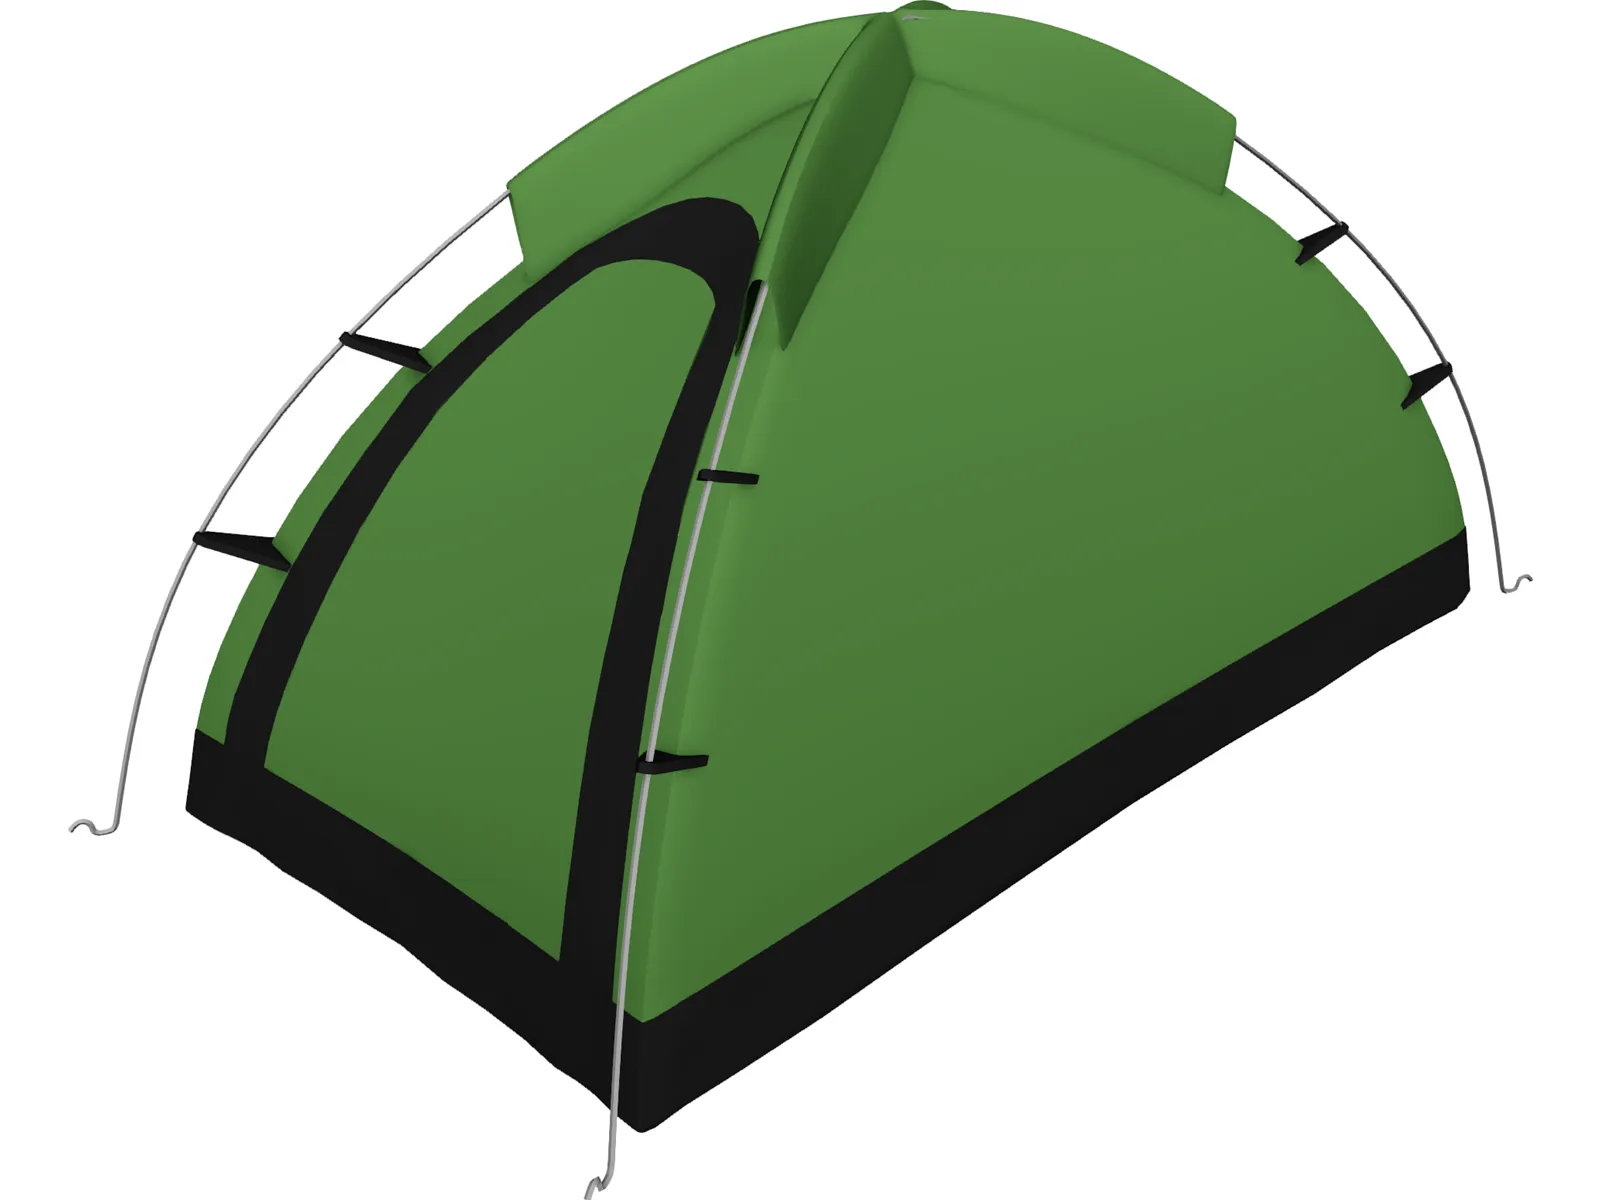 Tent 3D Model